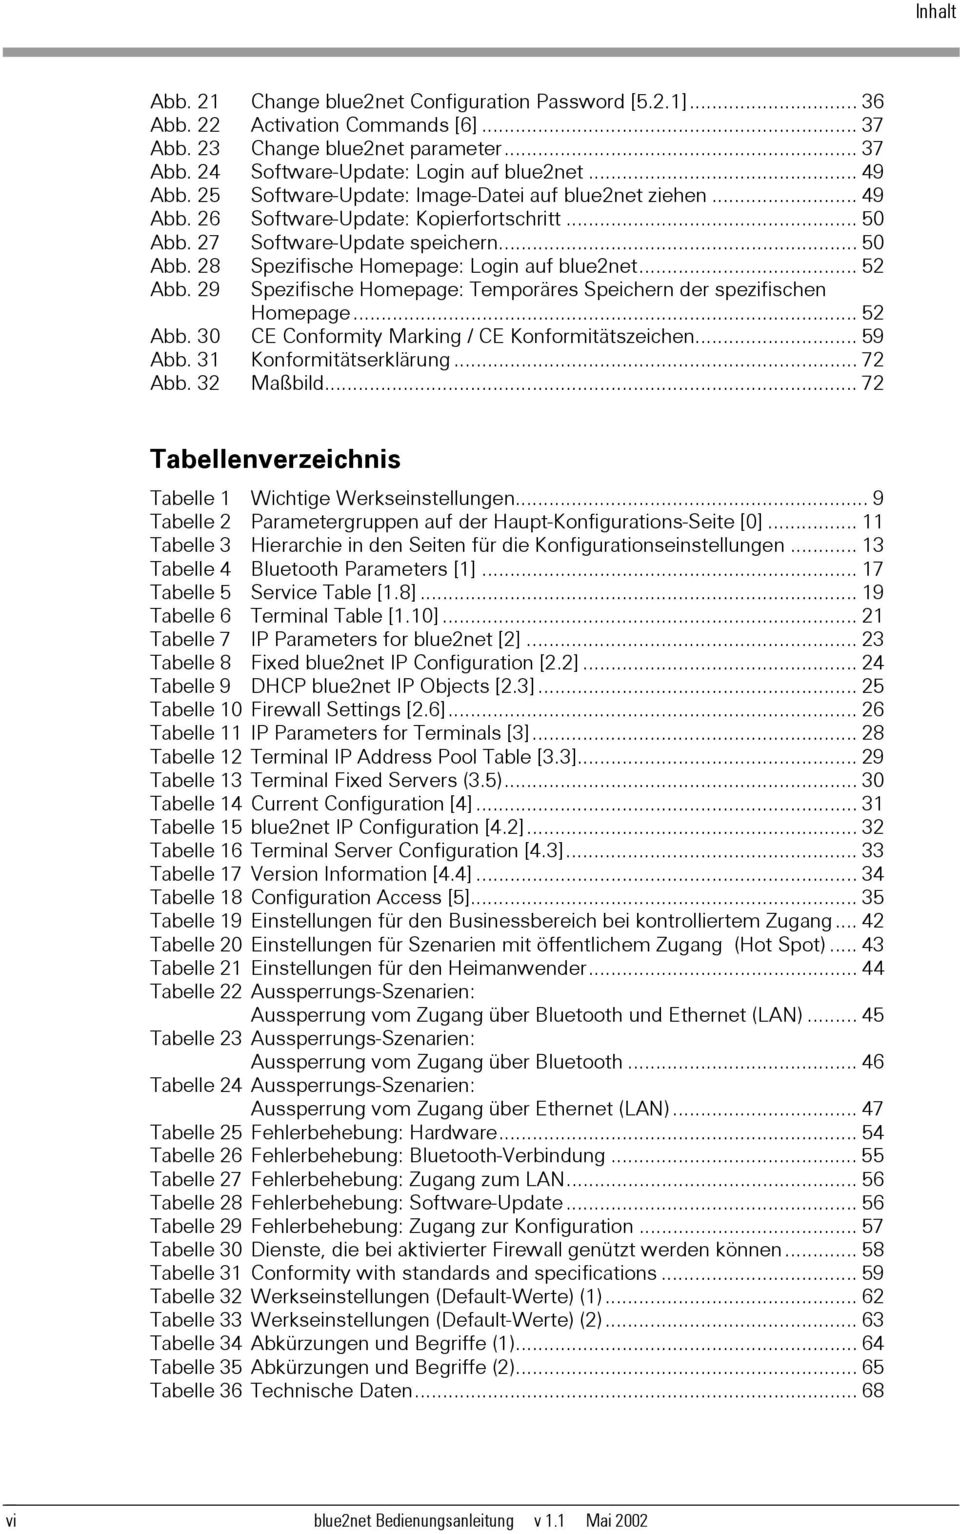 .. 52 Abb. 29 Spezifische Homepage: Temporäres Speichern der spezifischen Homepage... 52 Abb. 30 Abb. 31 CE Conformity Marking / CE Konformitätszeichen... 59 Konformitätserklärung... 72 Abb.